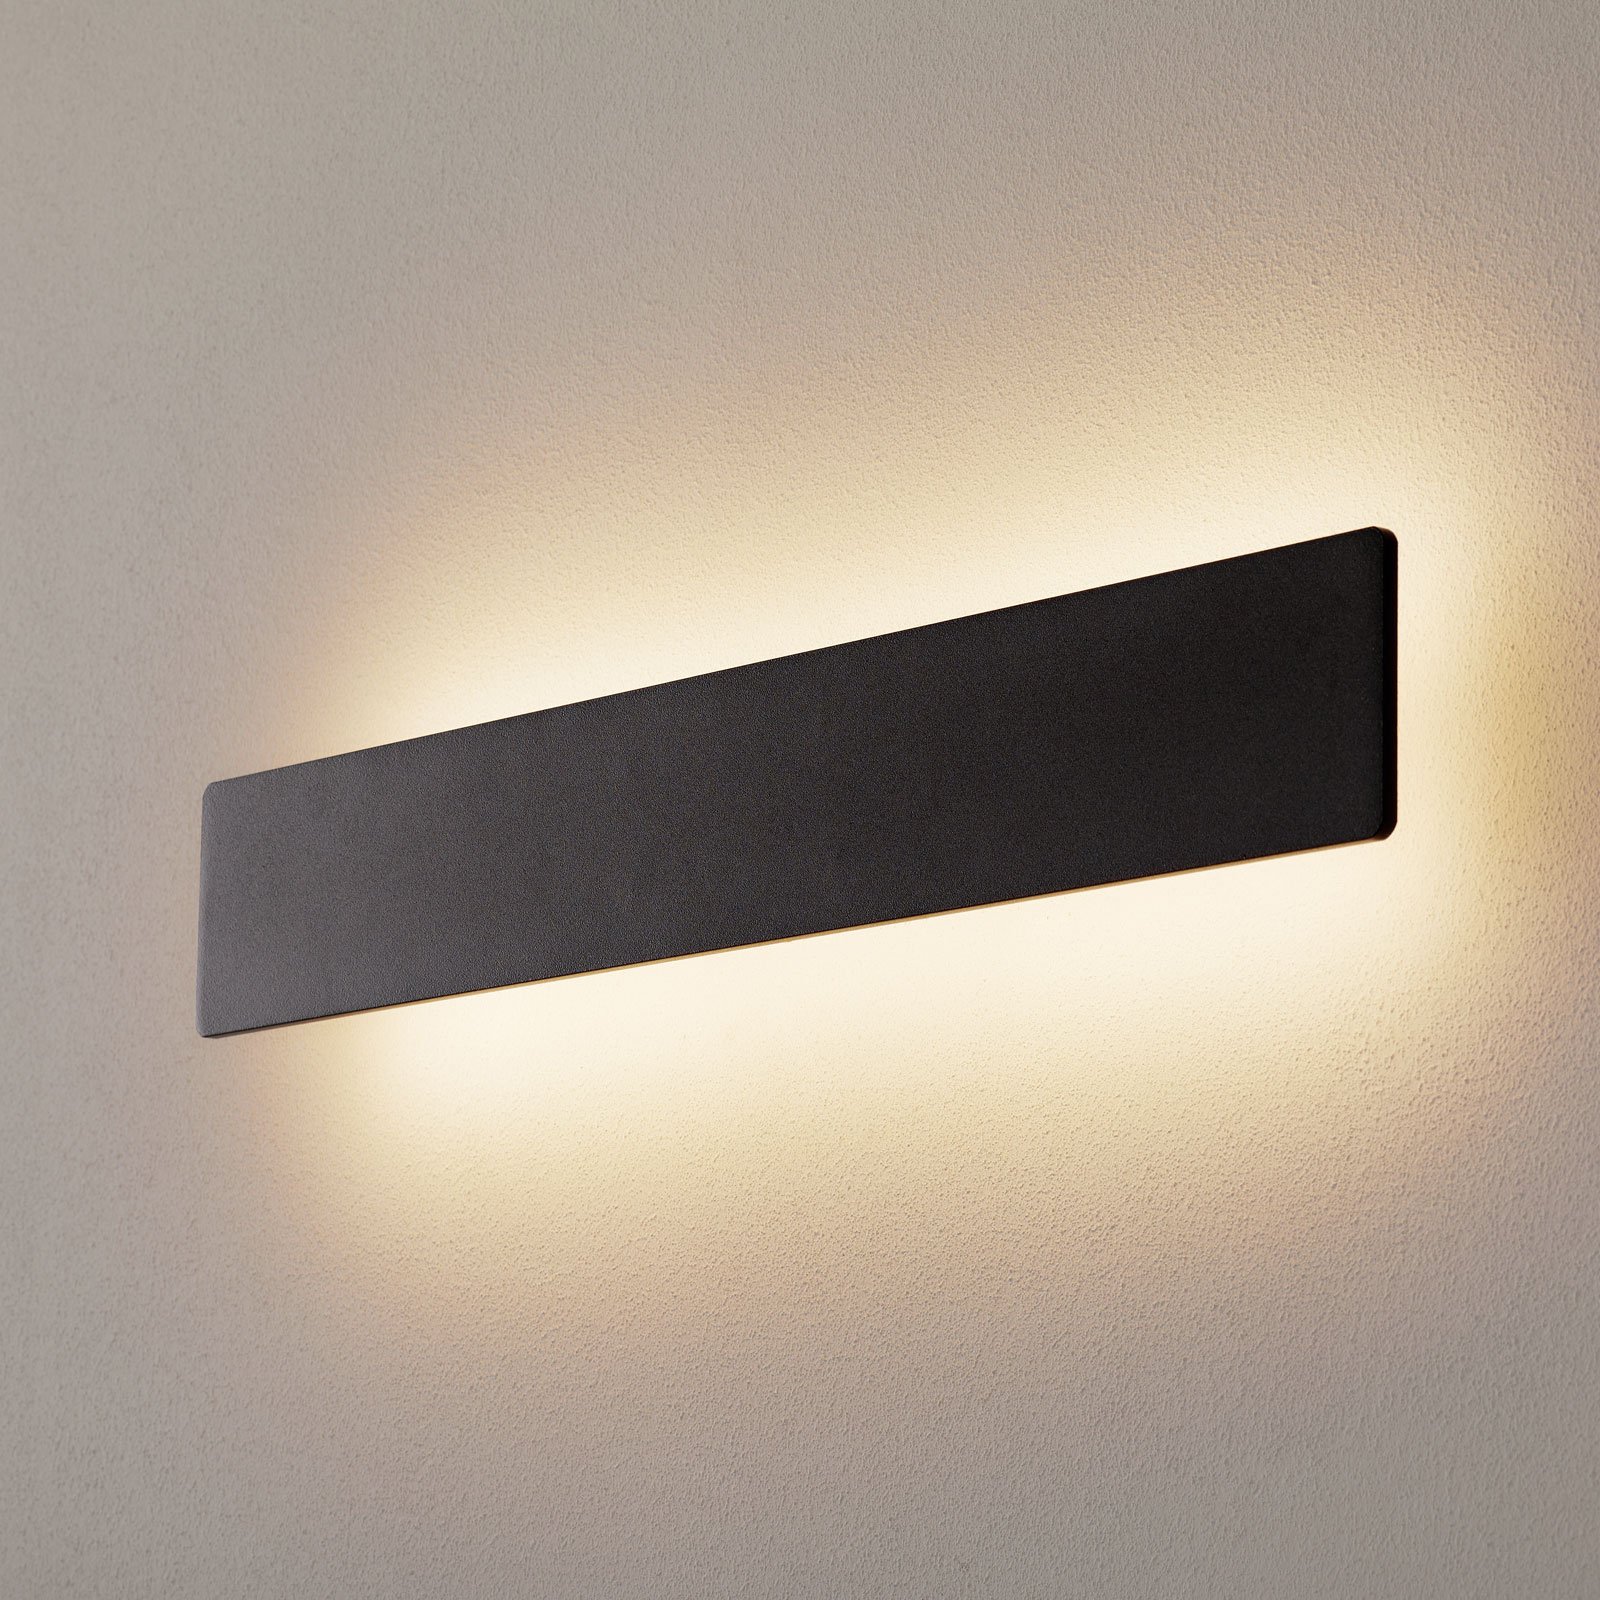 LED-vegglampe Zig Zag svart, bredde 53 cm